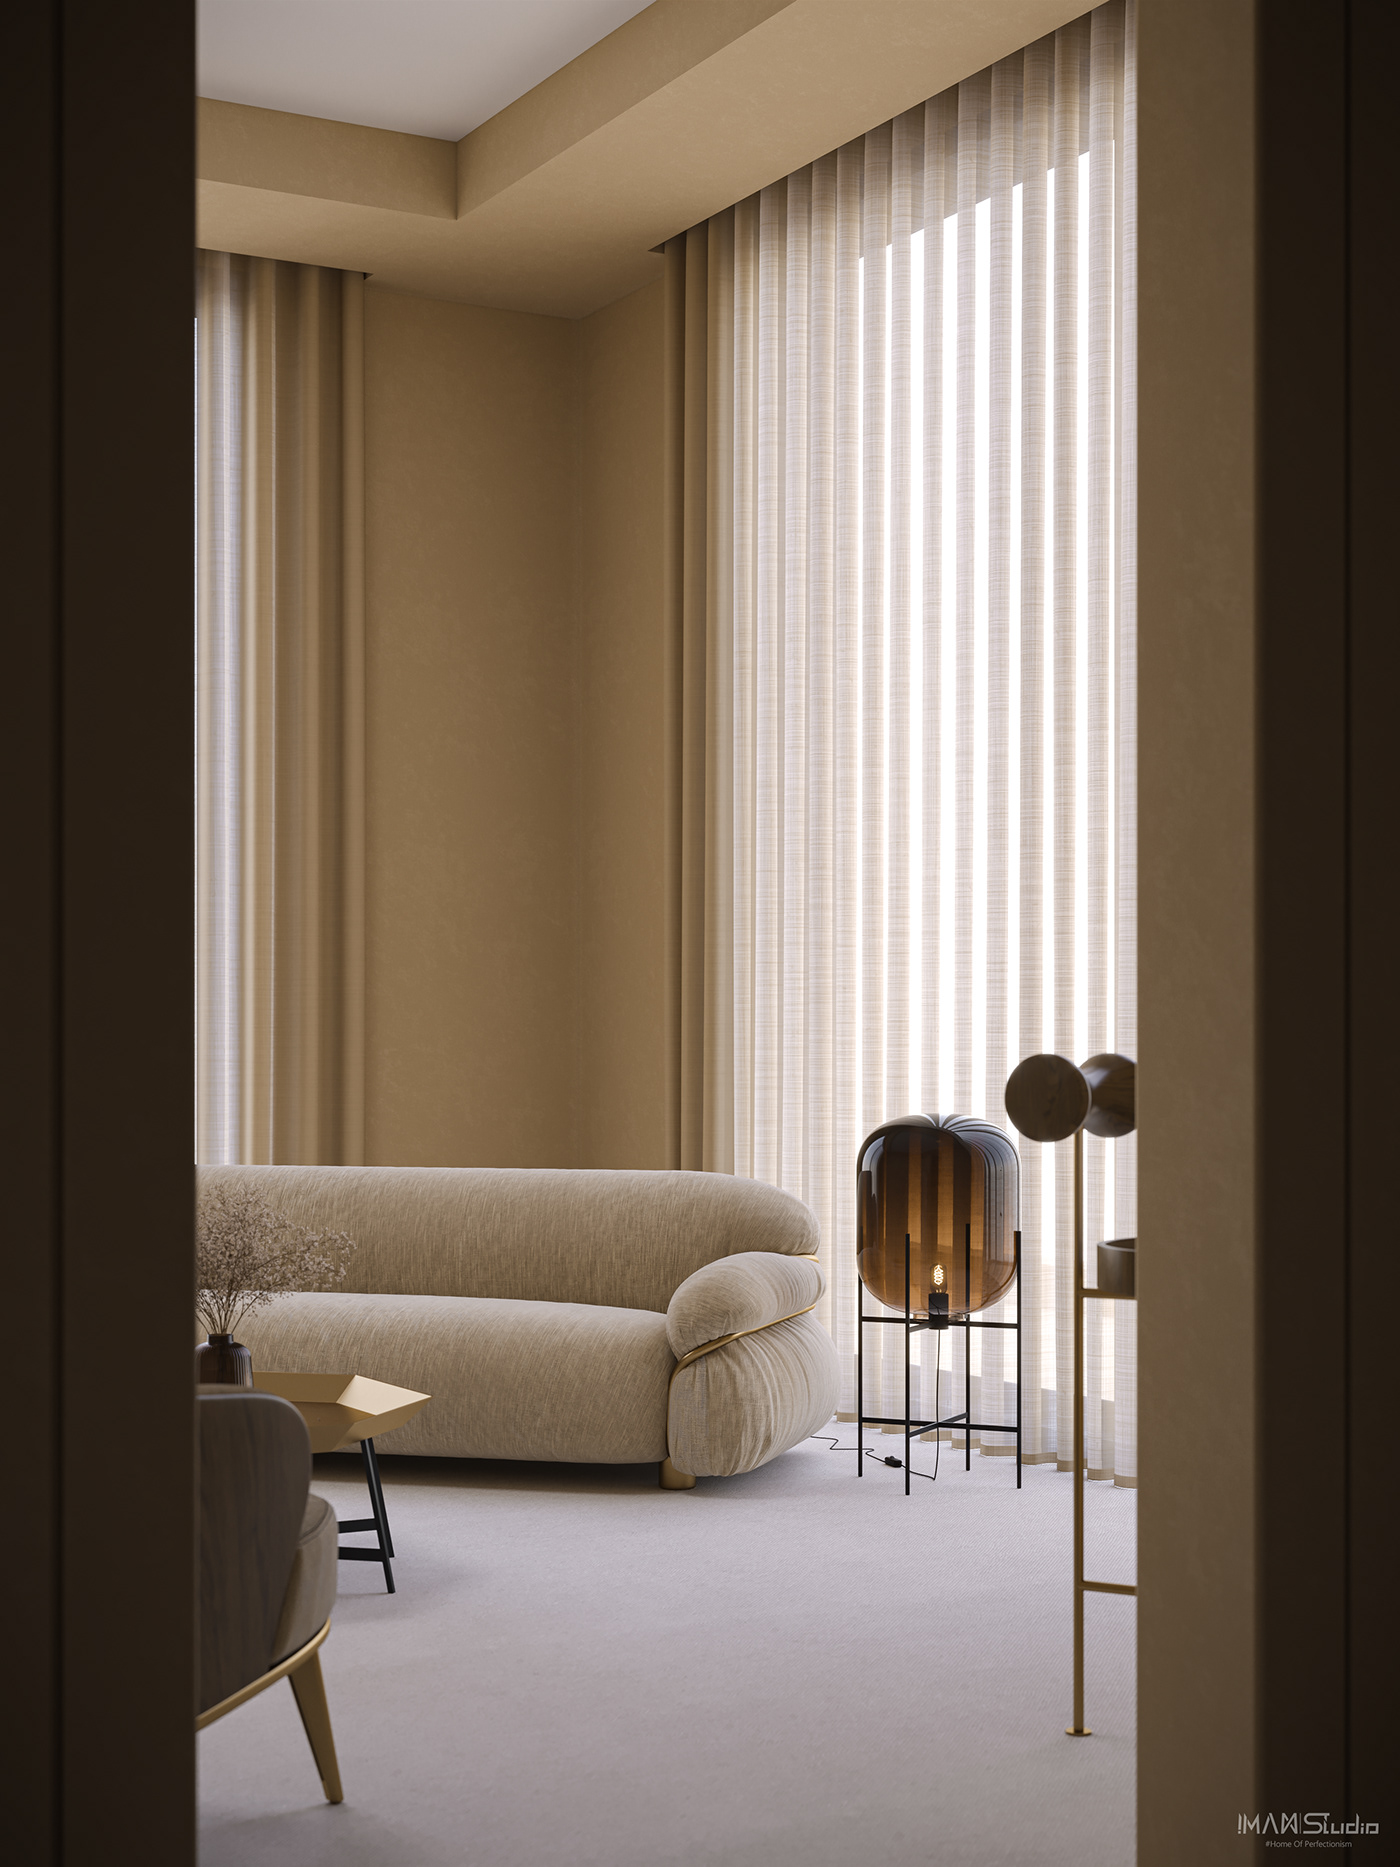 Caramél - Sofa & Floor Lamp on Behance